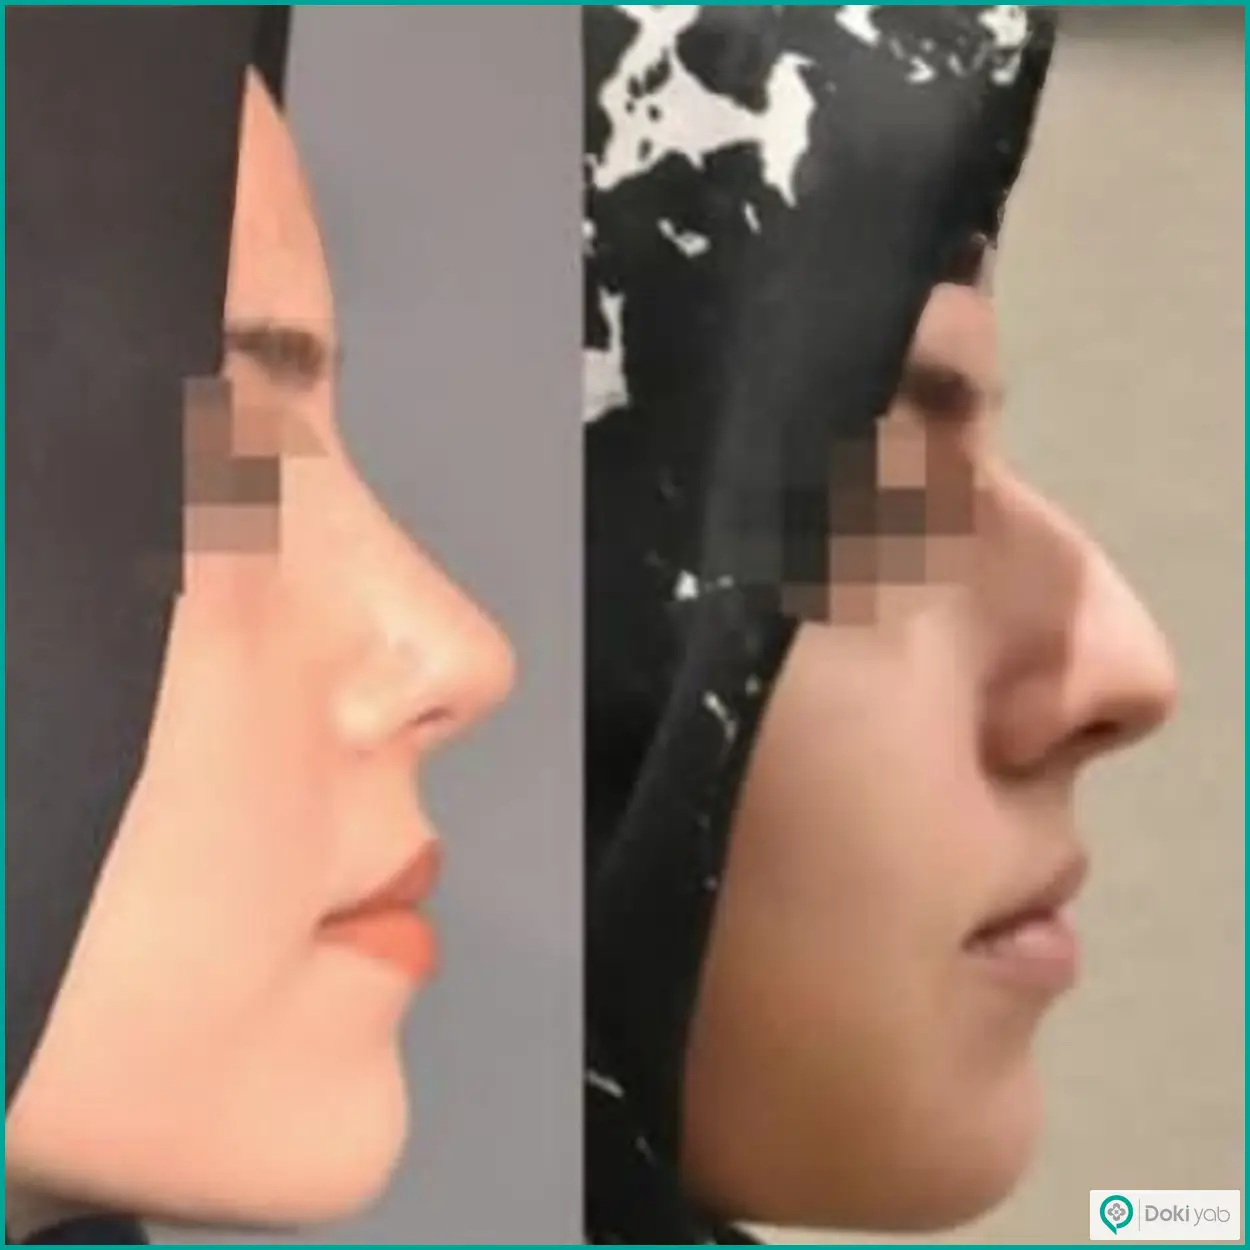 عکس قبل و بعد جراحی بینی استخوانی به سبک نیمه فانتزی دکتر وحید عین آبادی جراح بینی در شیراز